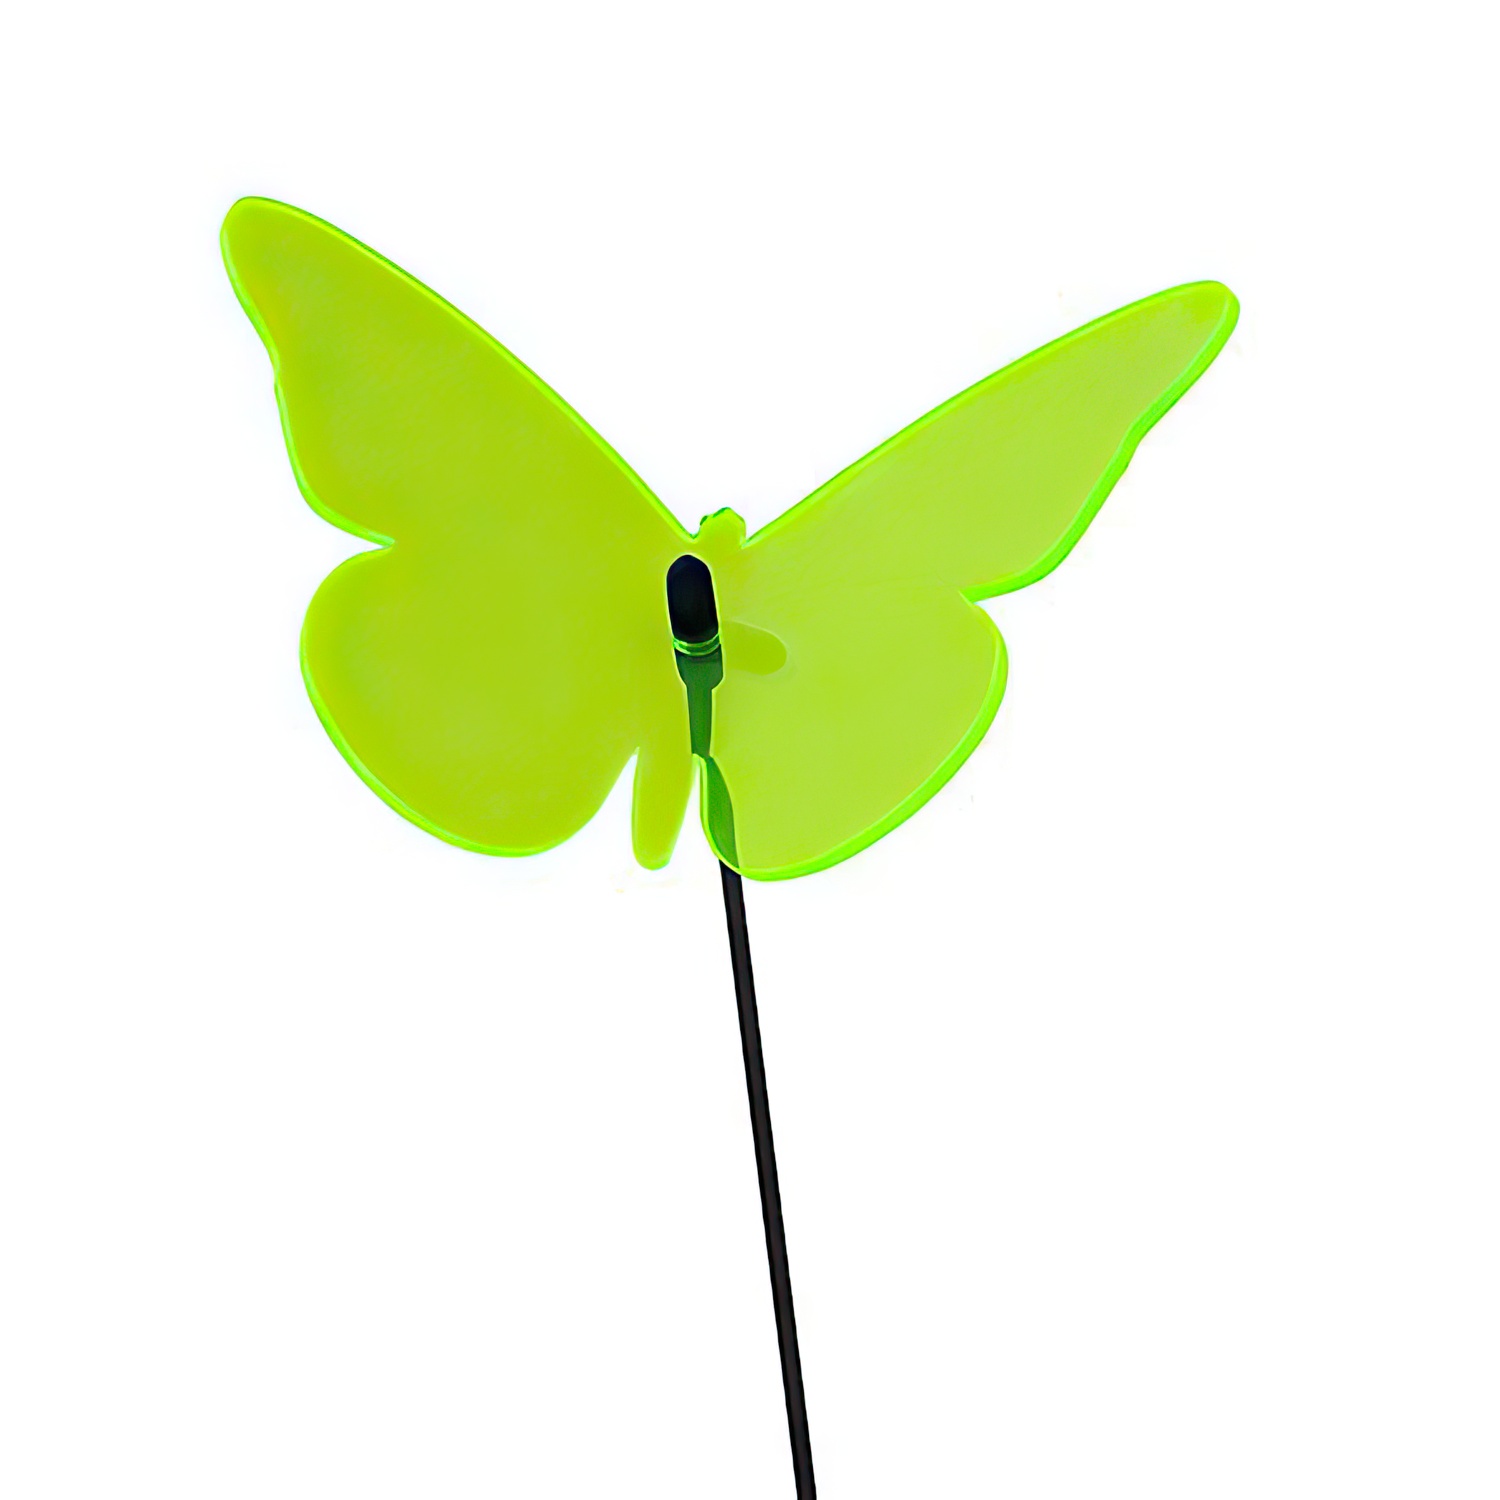 Elliot Lichtzauber - Sonnenfänger Schmetterling Magic 30 cm grün-/bilder/big/1019450_1.jpg